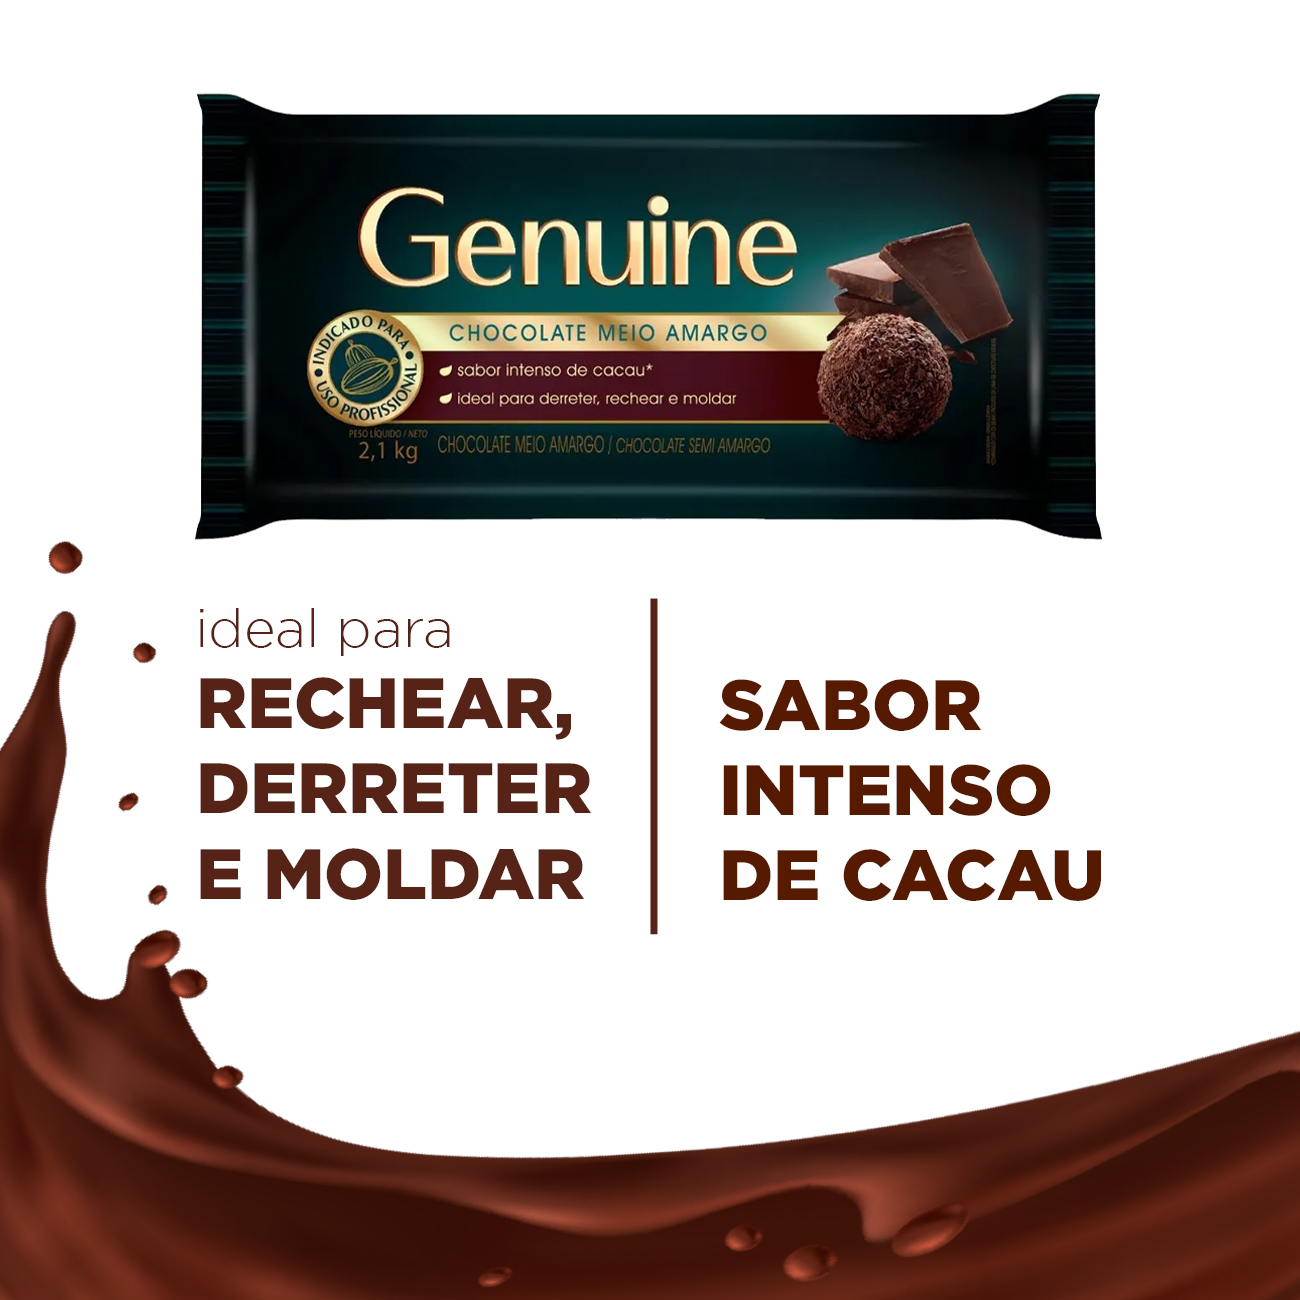 Cobertura de Chocolate em Barra Cargill Genuine Meio Amargo 2,1kg